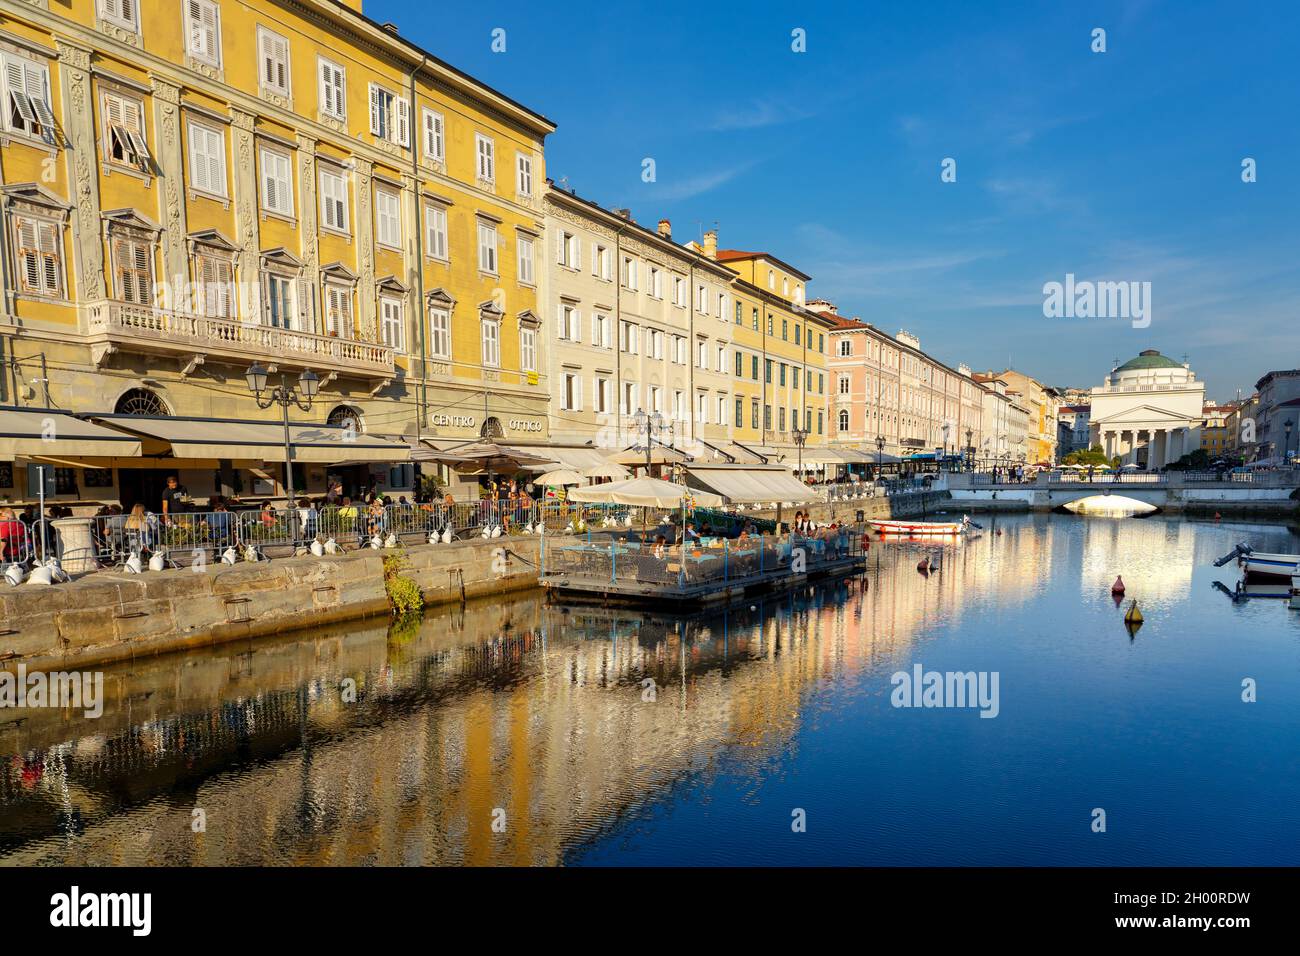 11.08.2021: Trieste, Italy: Canal Grande di Trieste with la chiesa di sant antonio church daytime . Stock Photo